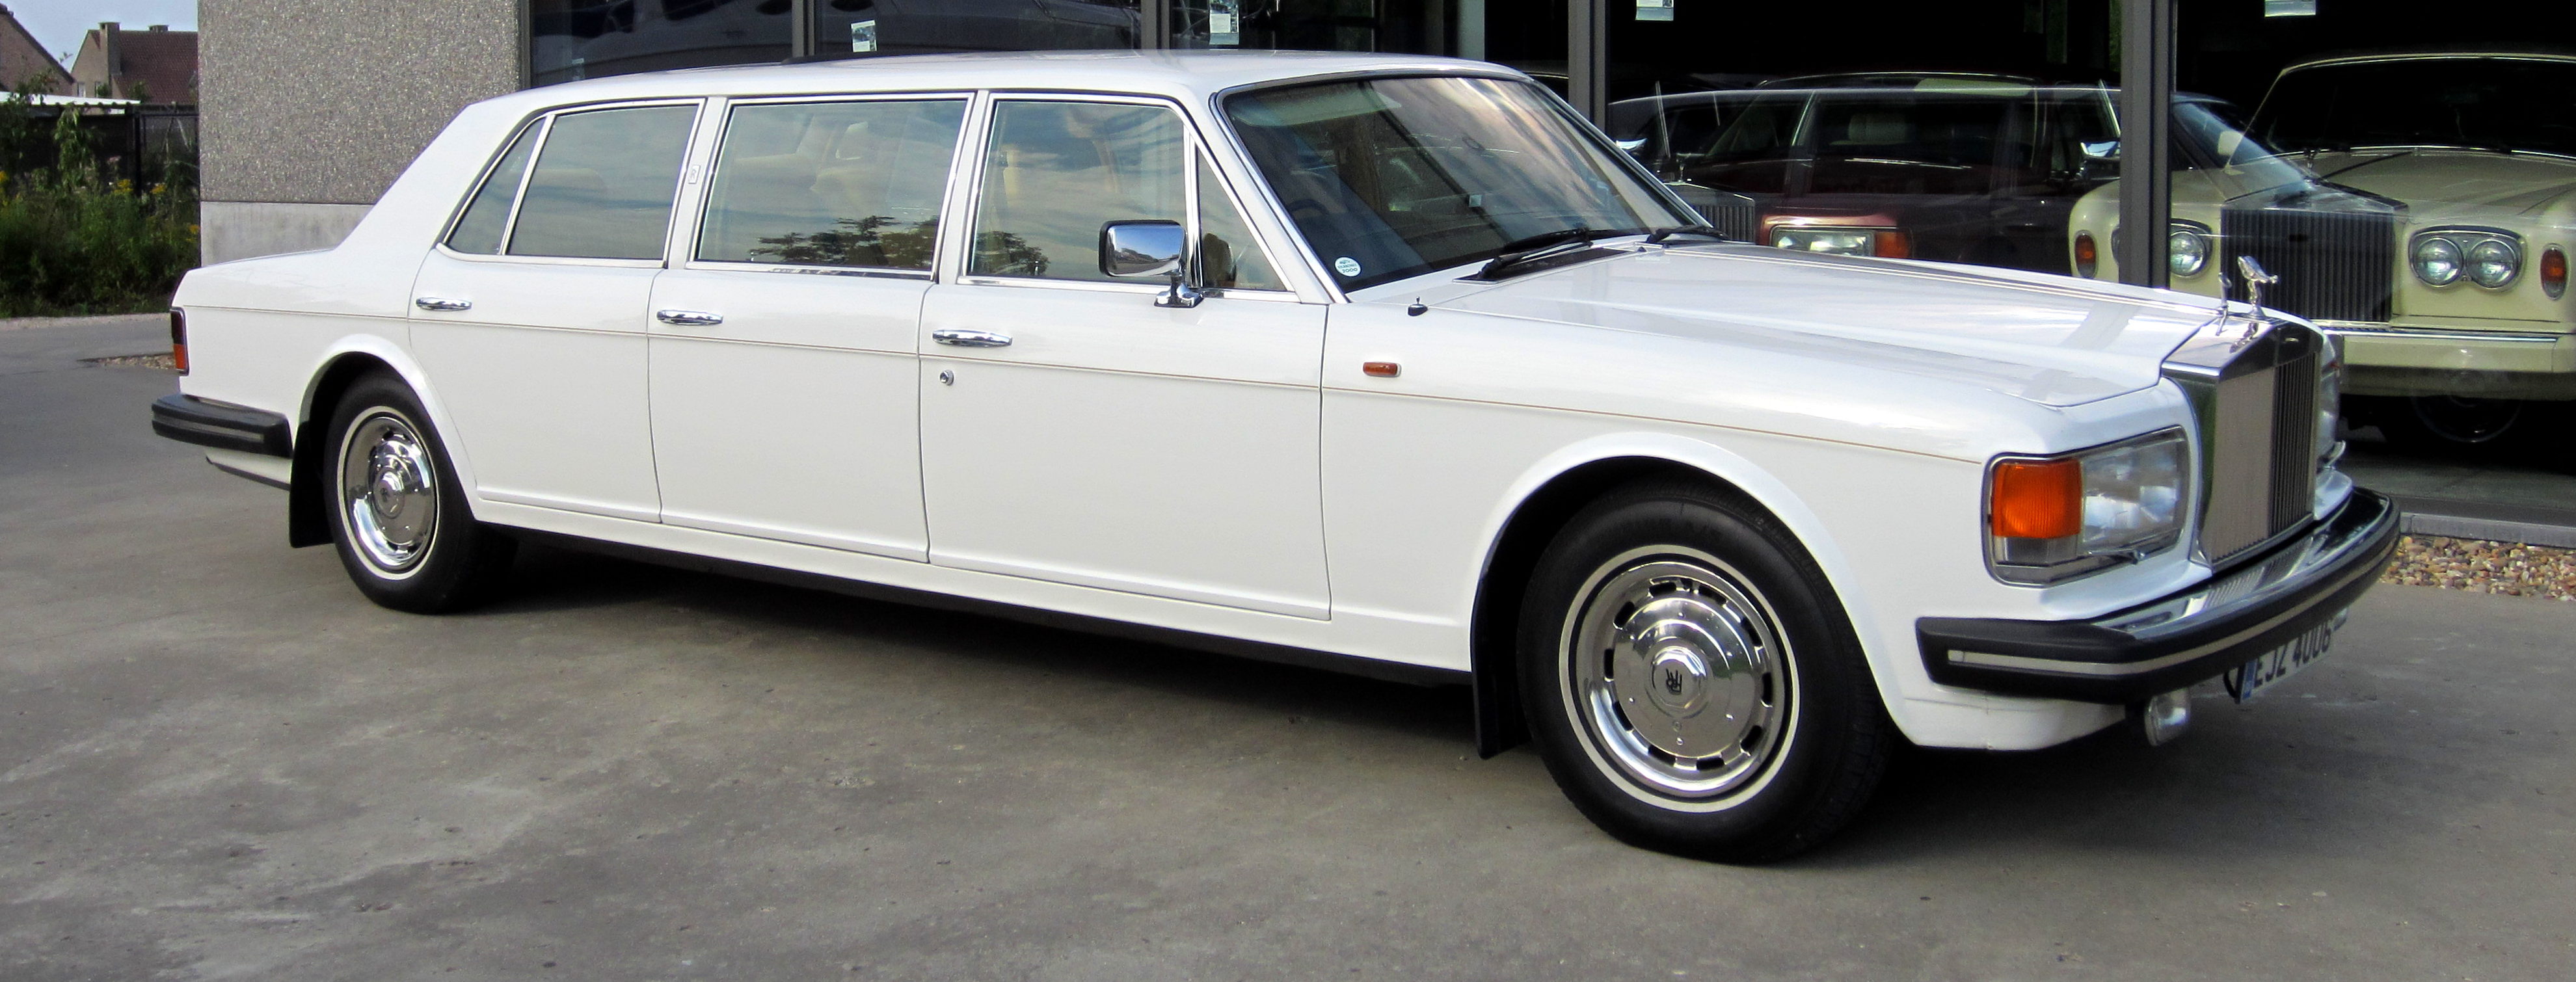 Rolls Royce лимузин 1979